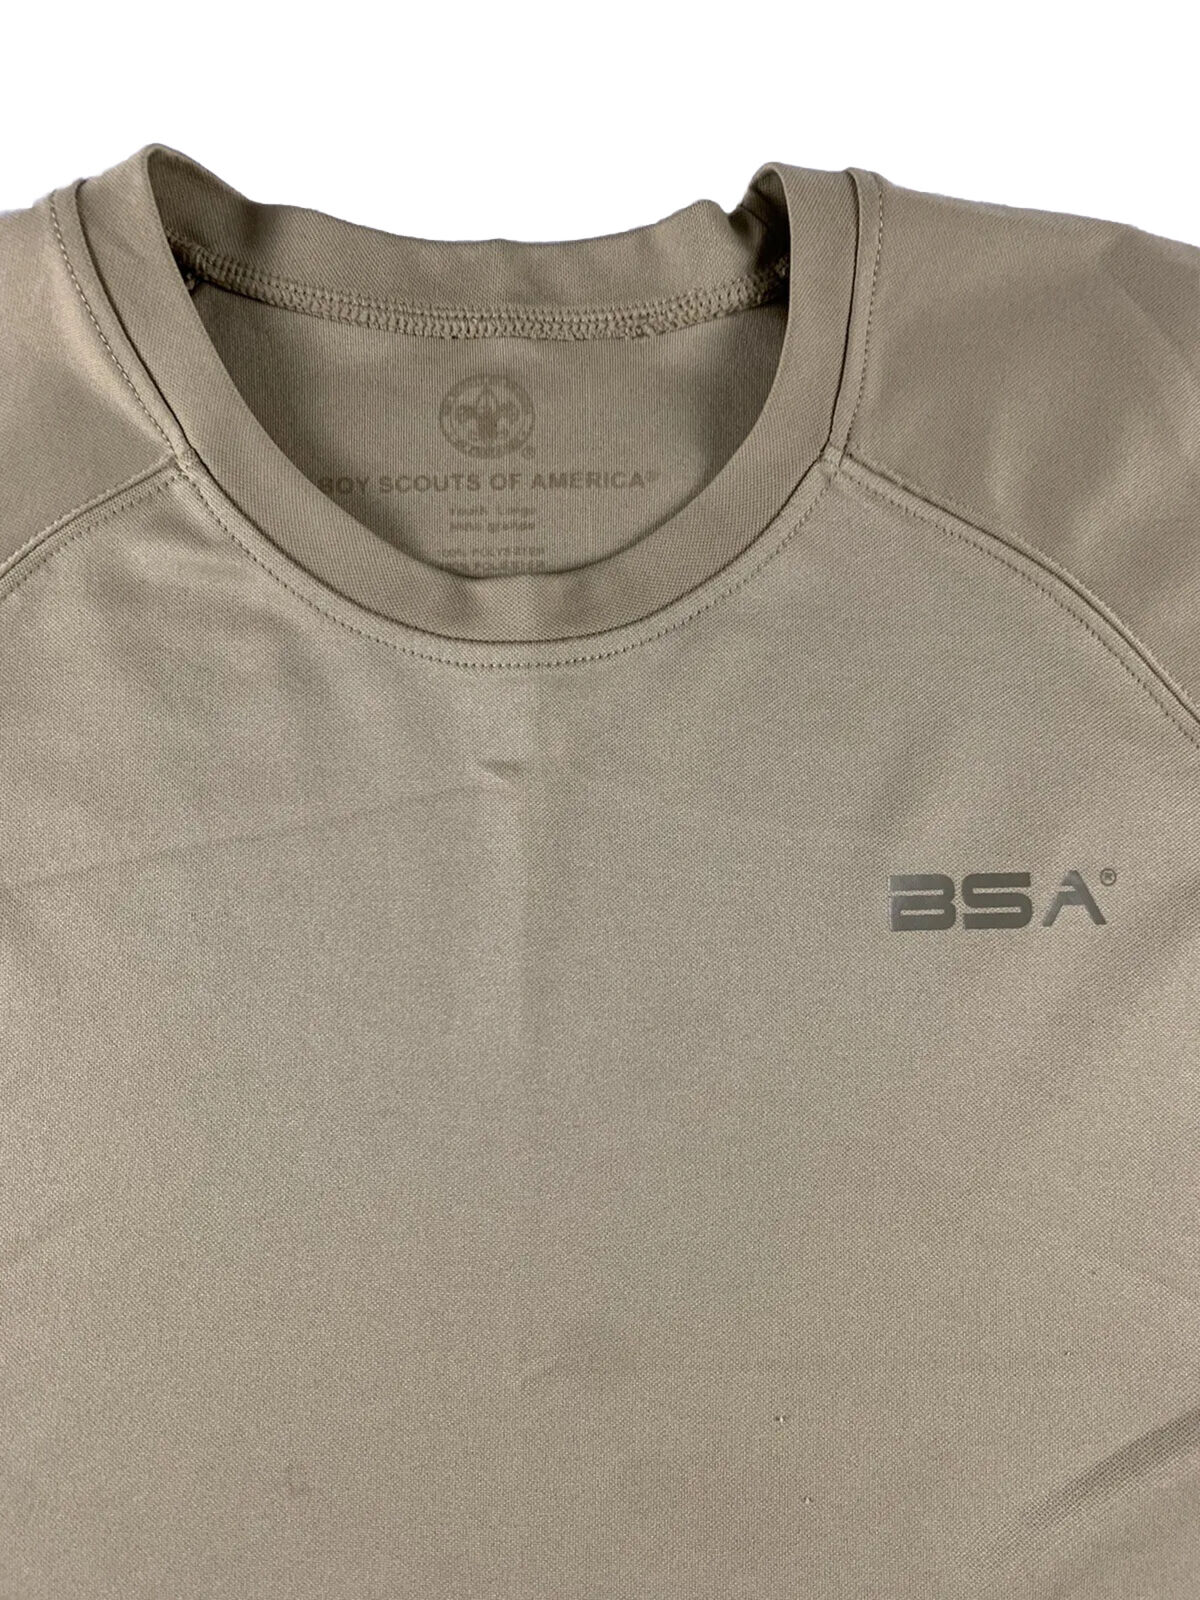 BSA Boy Scout T Shirt Beige Mens Medium M